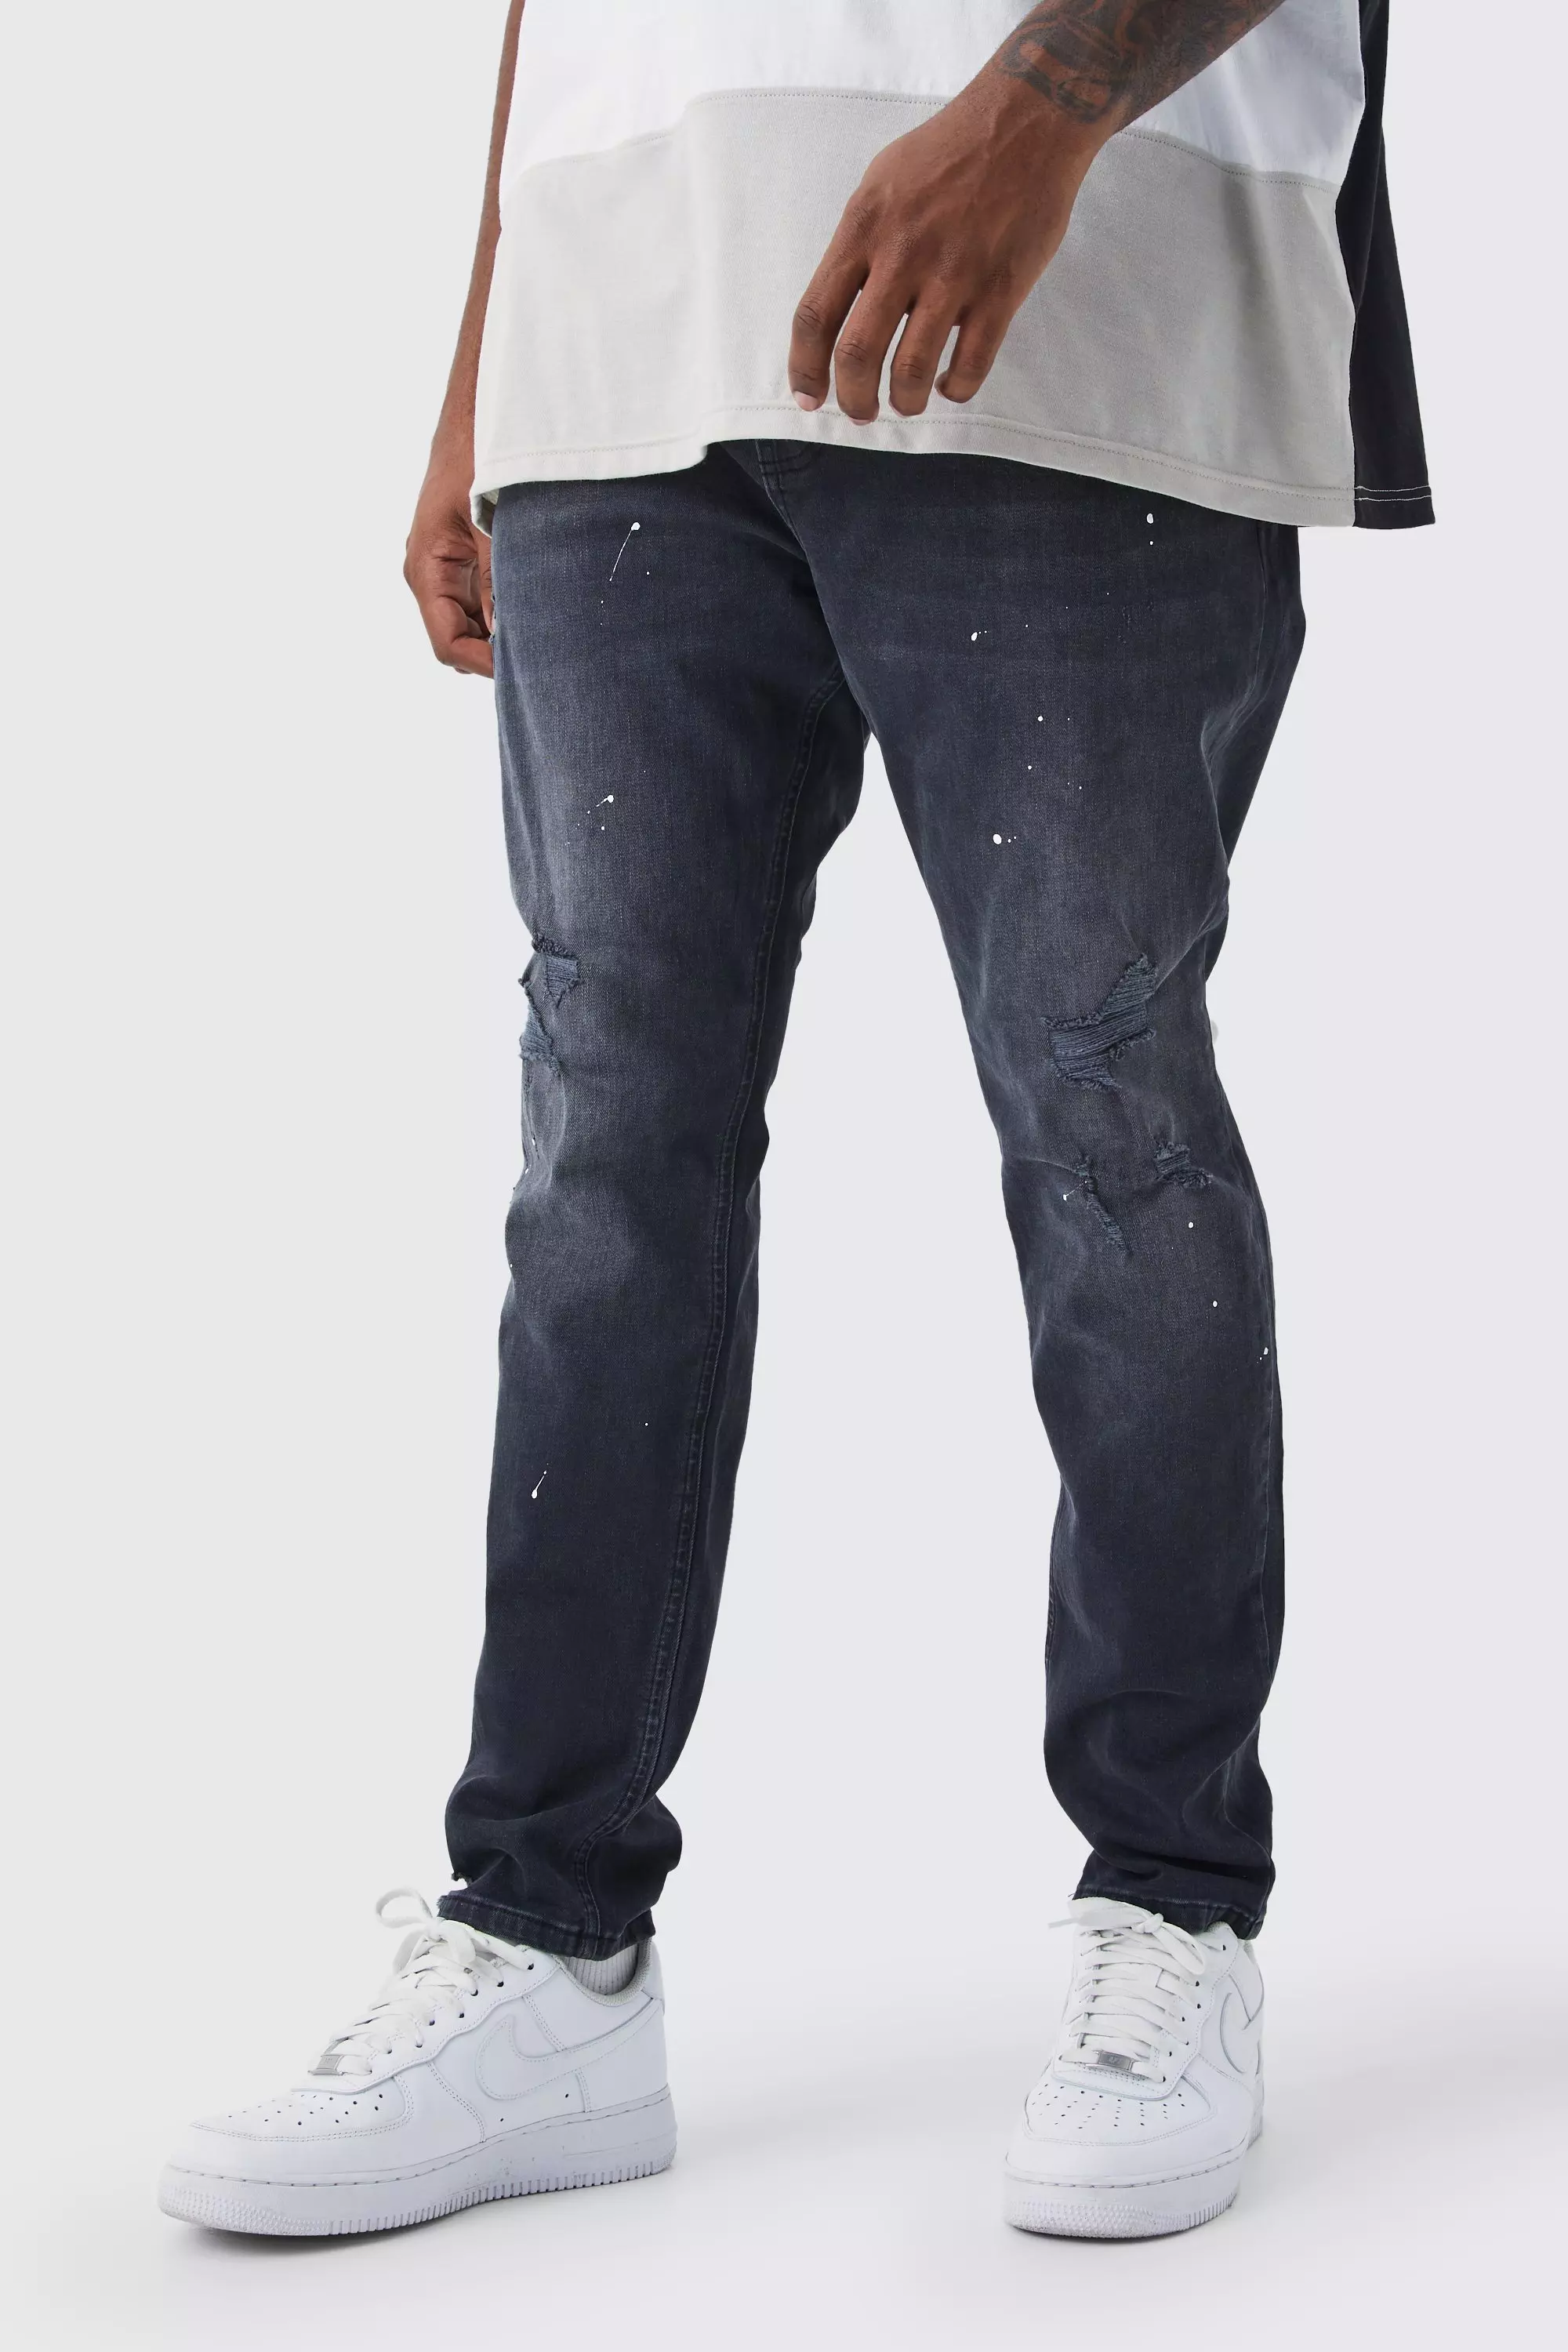 Paint Splatter Denim Jeans - Black 